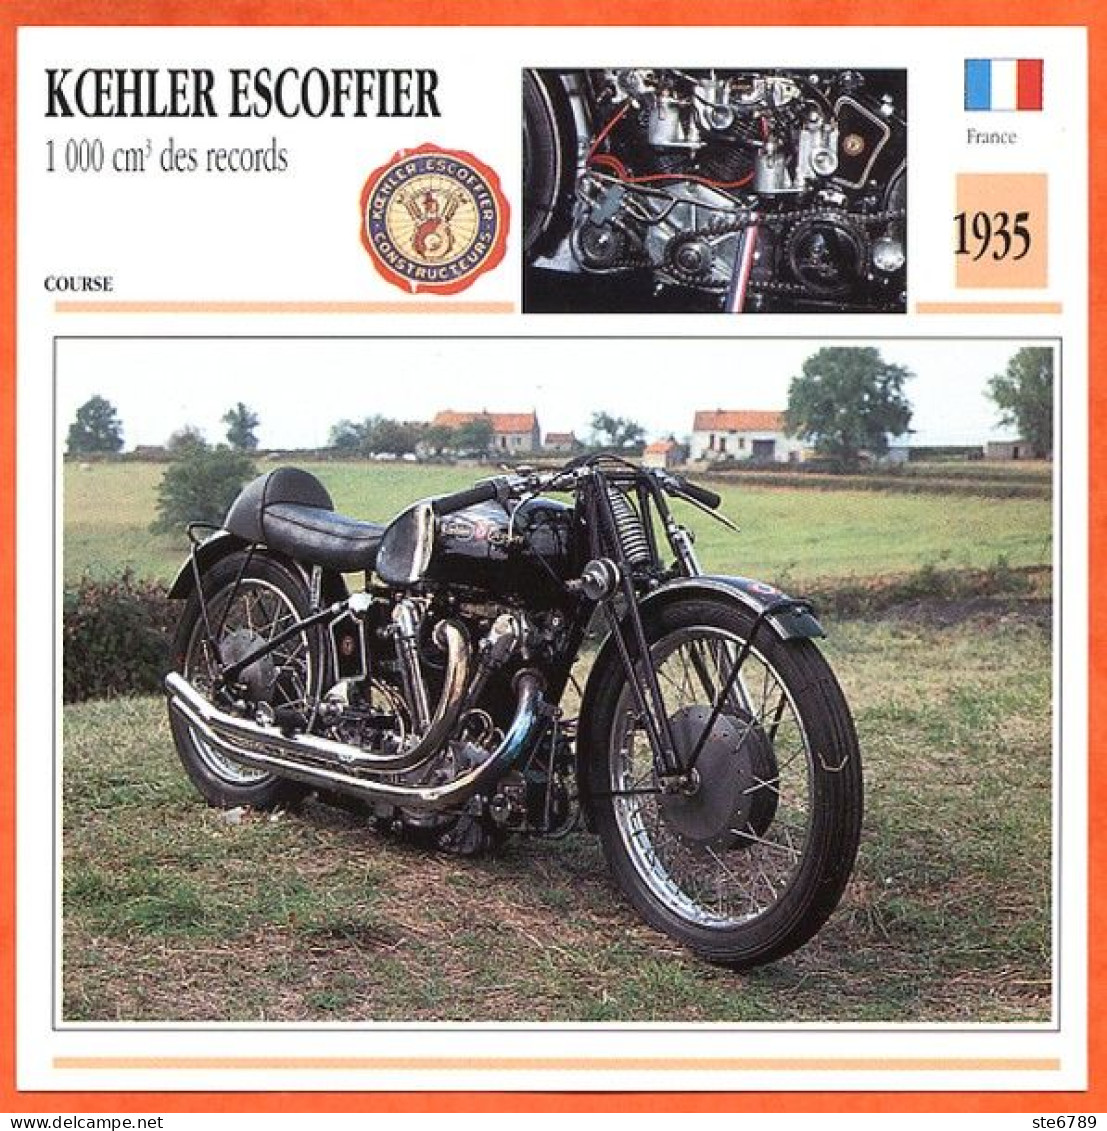 KOEHLER ESCOFFIER 1000 1935 France Fiche Technique Moto - Sports